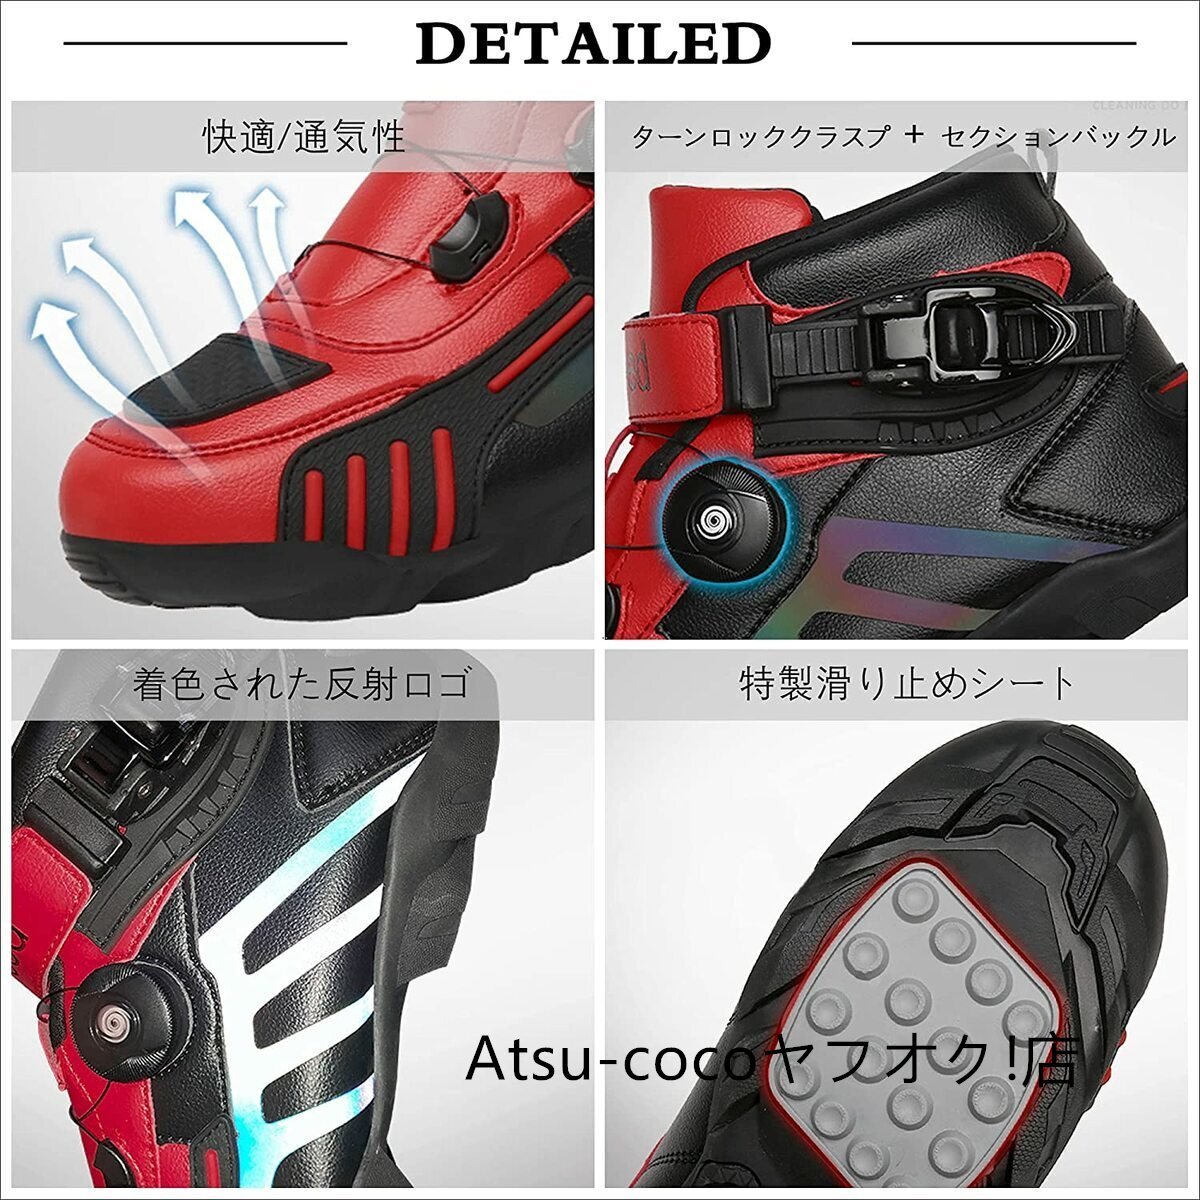 バイク用ブーツ オートバイ靴 3色 ライディングブーツ ライダーブーツ 強化防衛性 レーシングブーツ バイク用靴 耐衝撃 通気_画像7